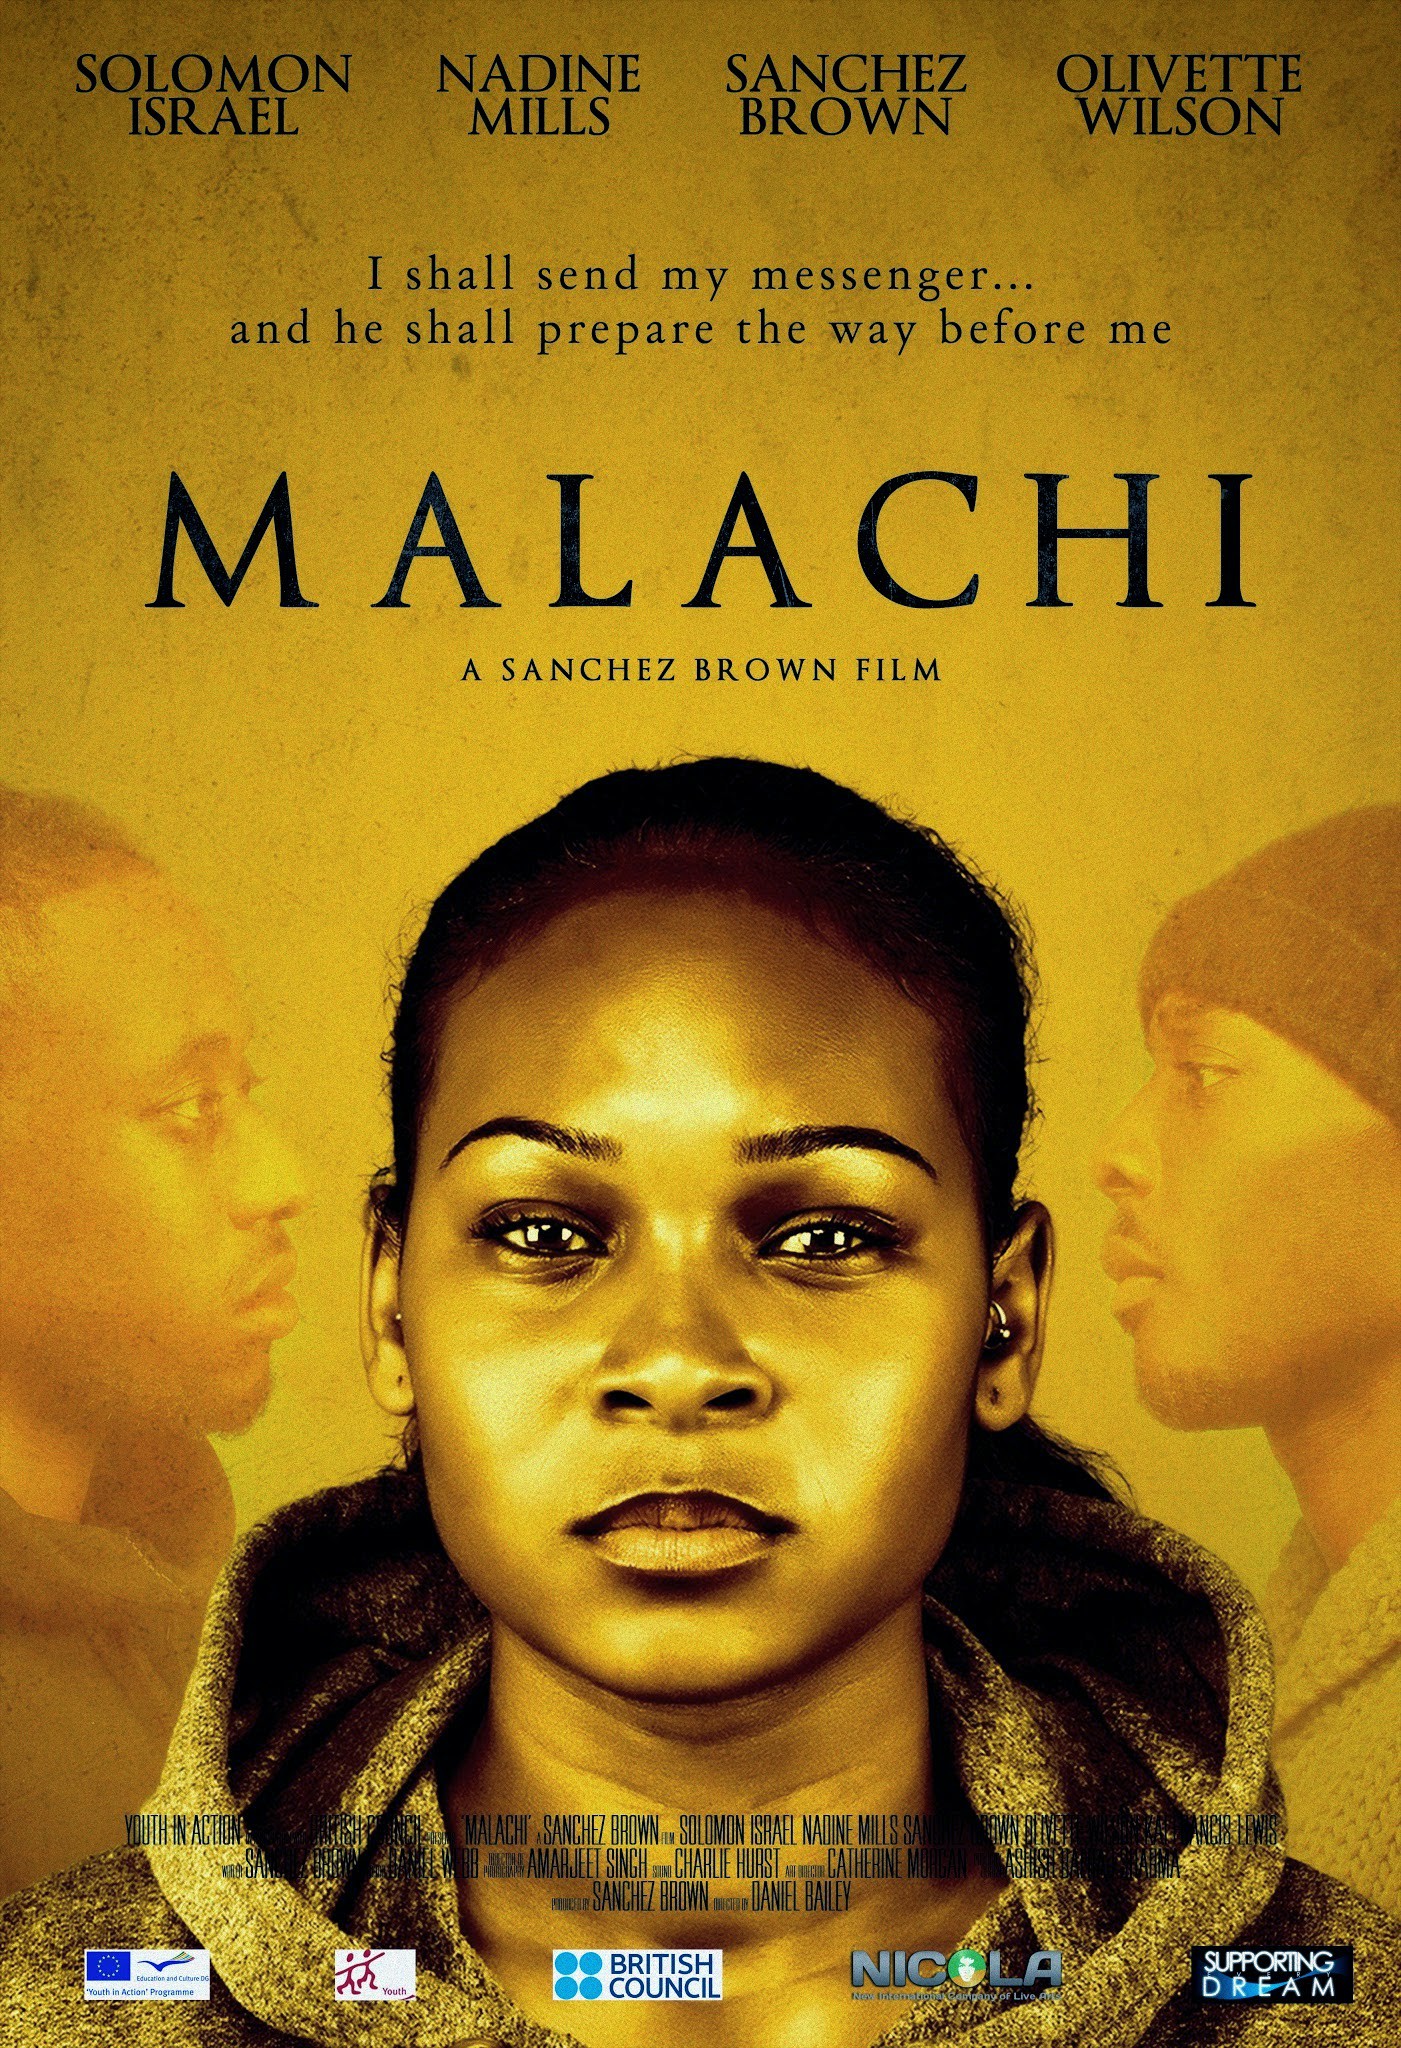 Mega Sized Movie Poster Image for Malachi